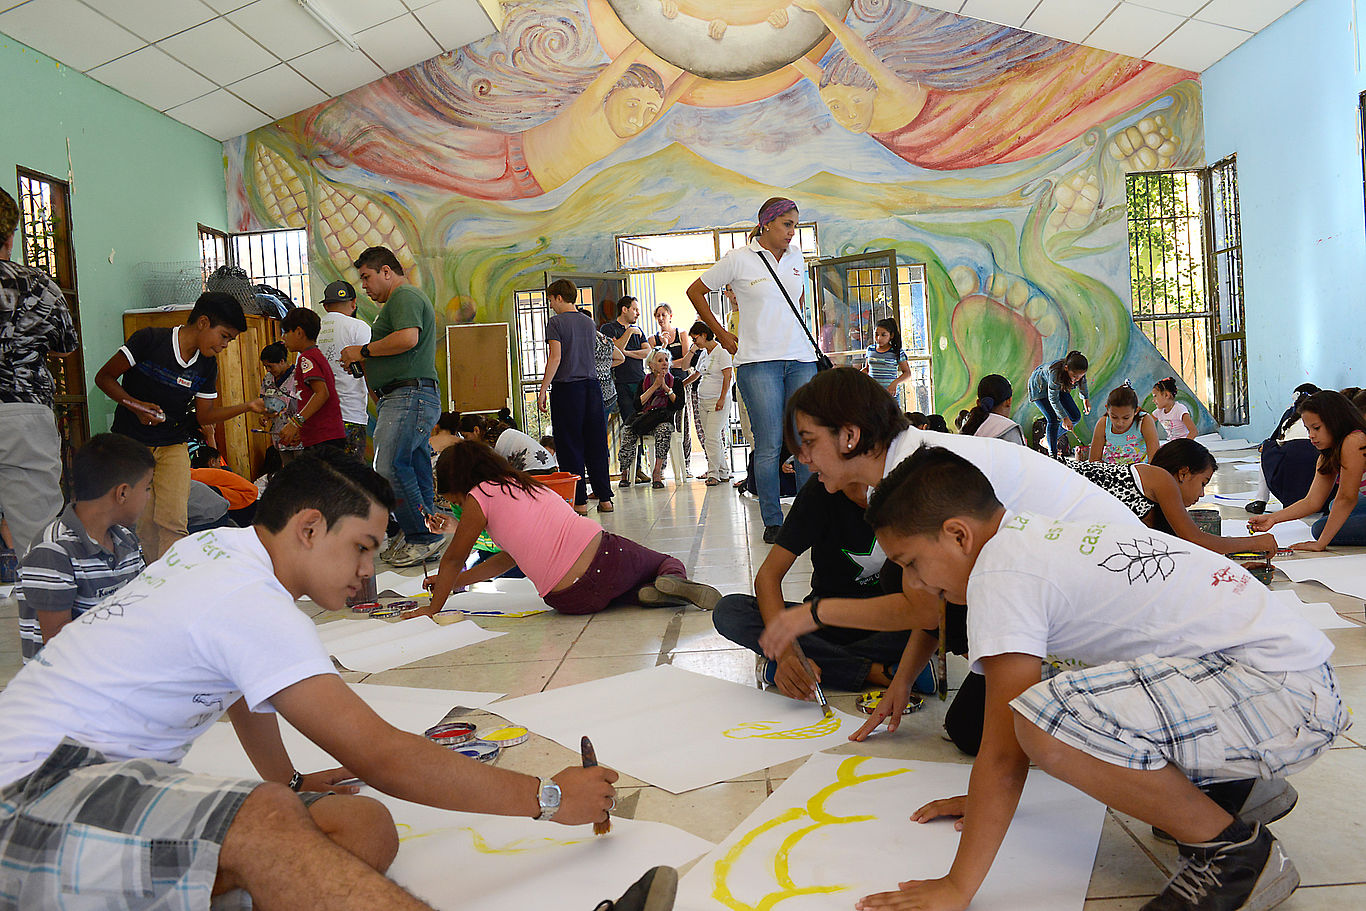 Mehrere Kinder und Jugendliche malen auf großen Papieren auf dem Boden.